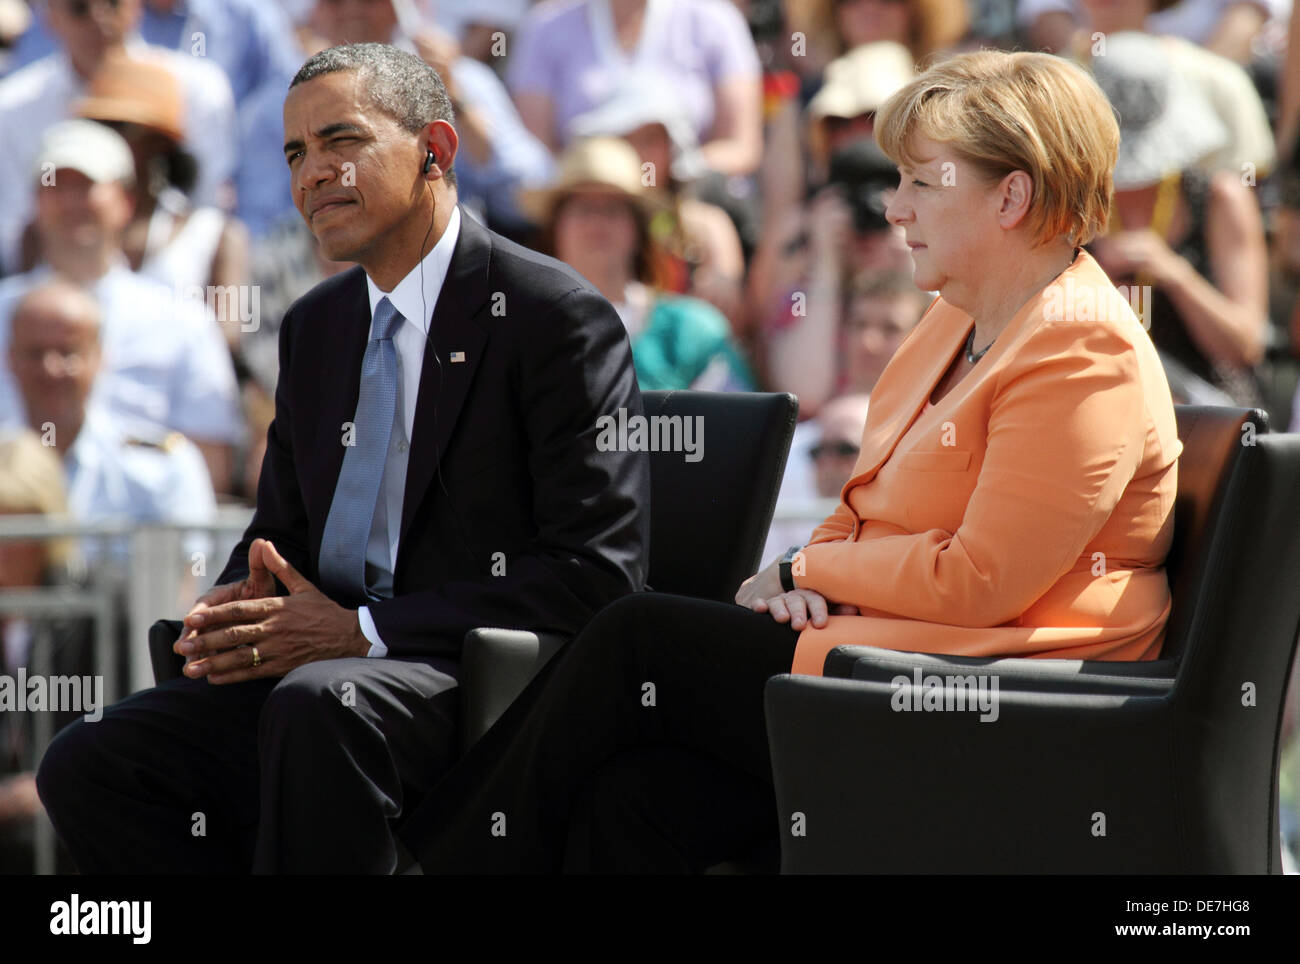 Berlín, Alemania, el presidente estadounidense Barack Obama y la Canciller alemana Angela Merkel (CDU) en la Puerta de Brandenburgo Foto de stock